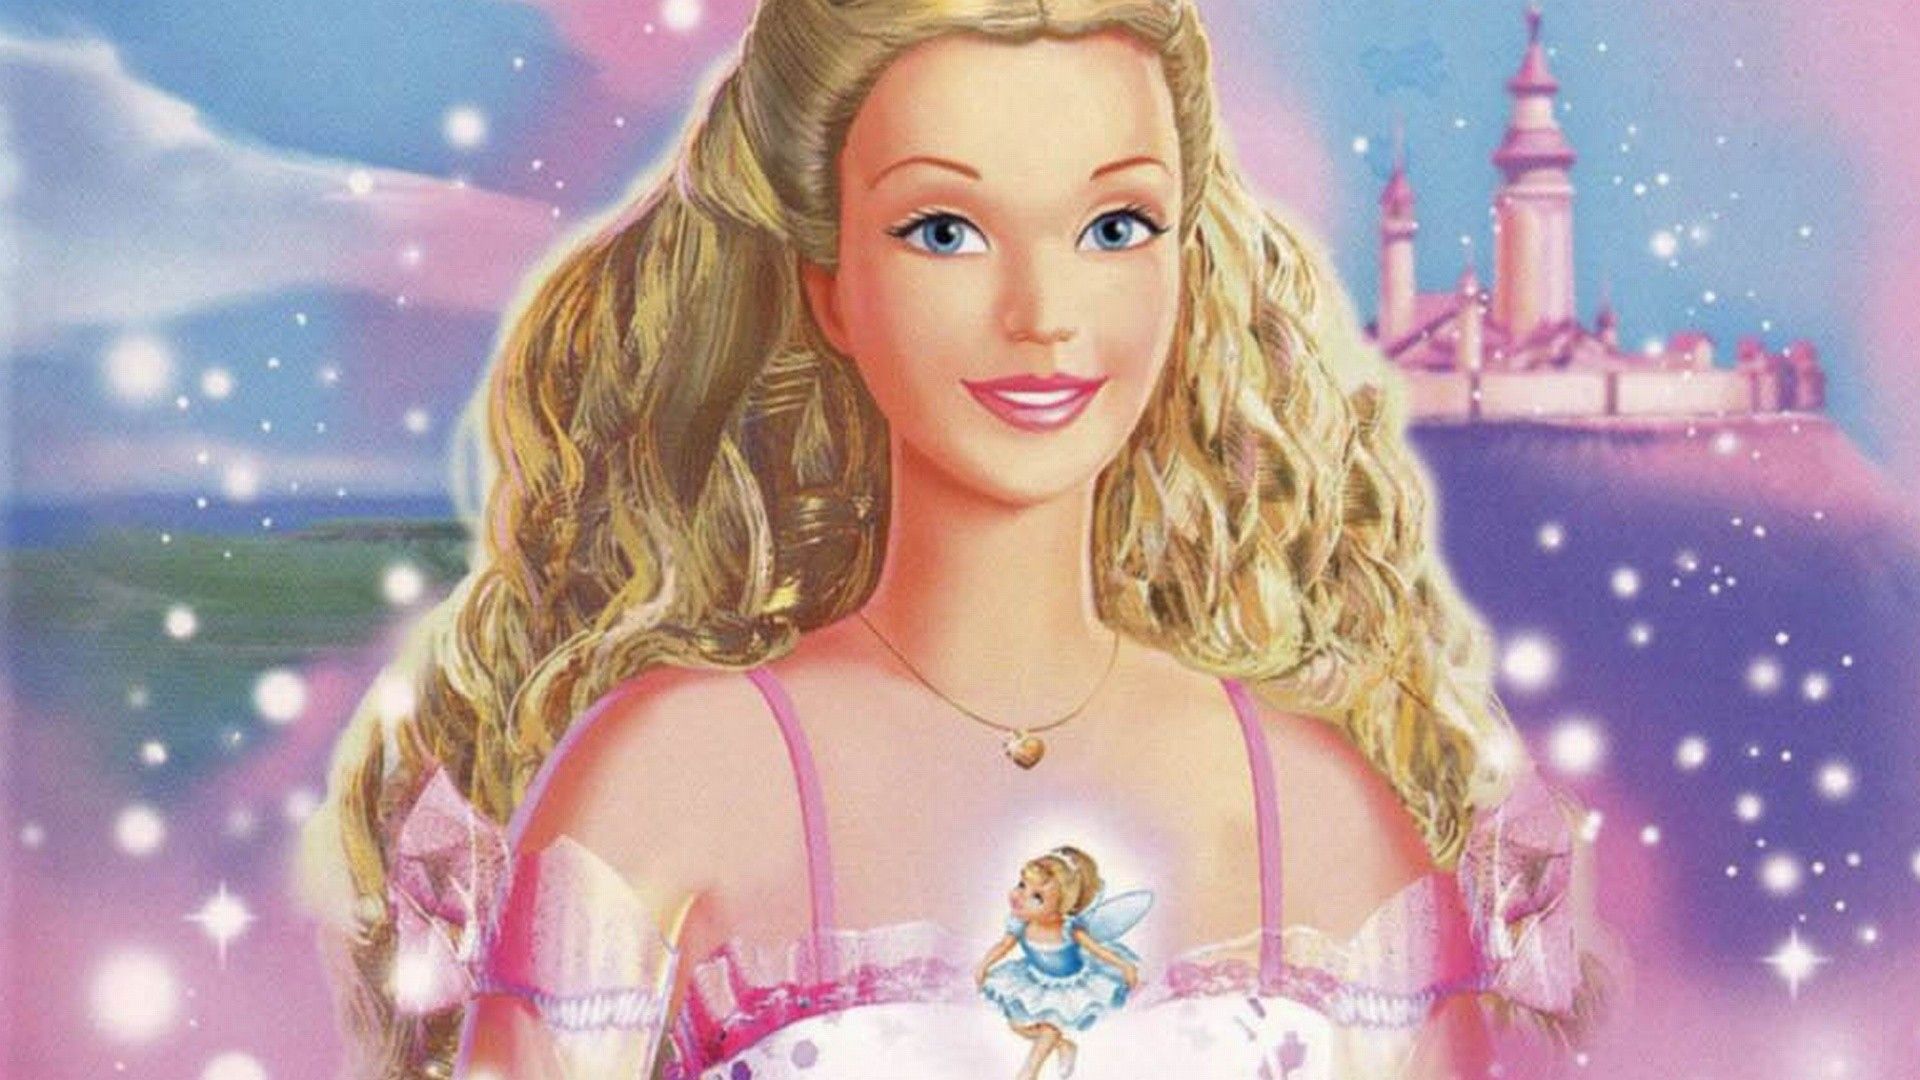 Barbie Movie Wallpaper 1080p -themes.com